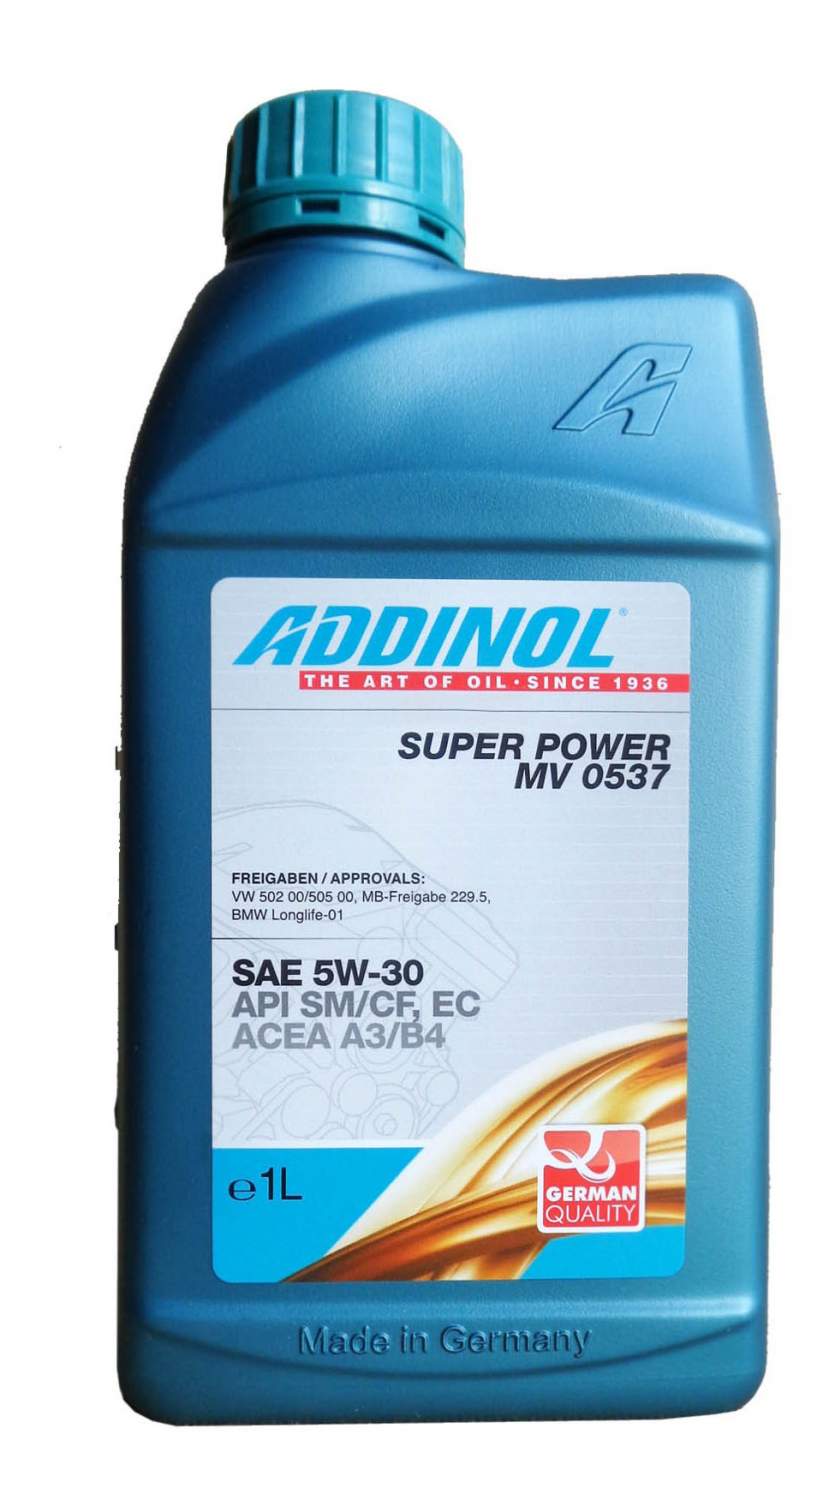 Super Power MV 0537 Addinol 4014766071064